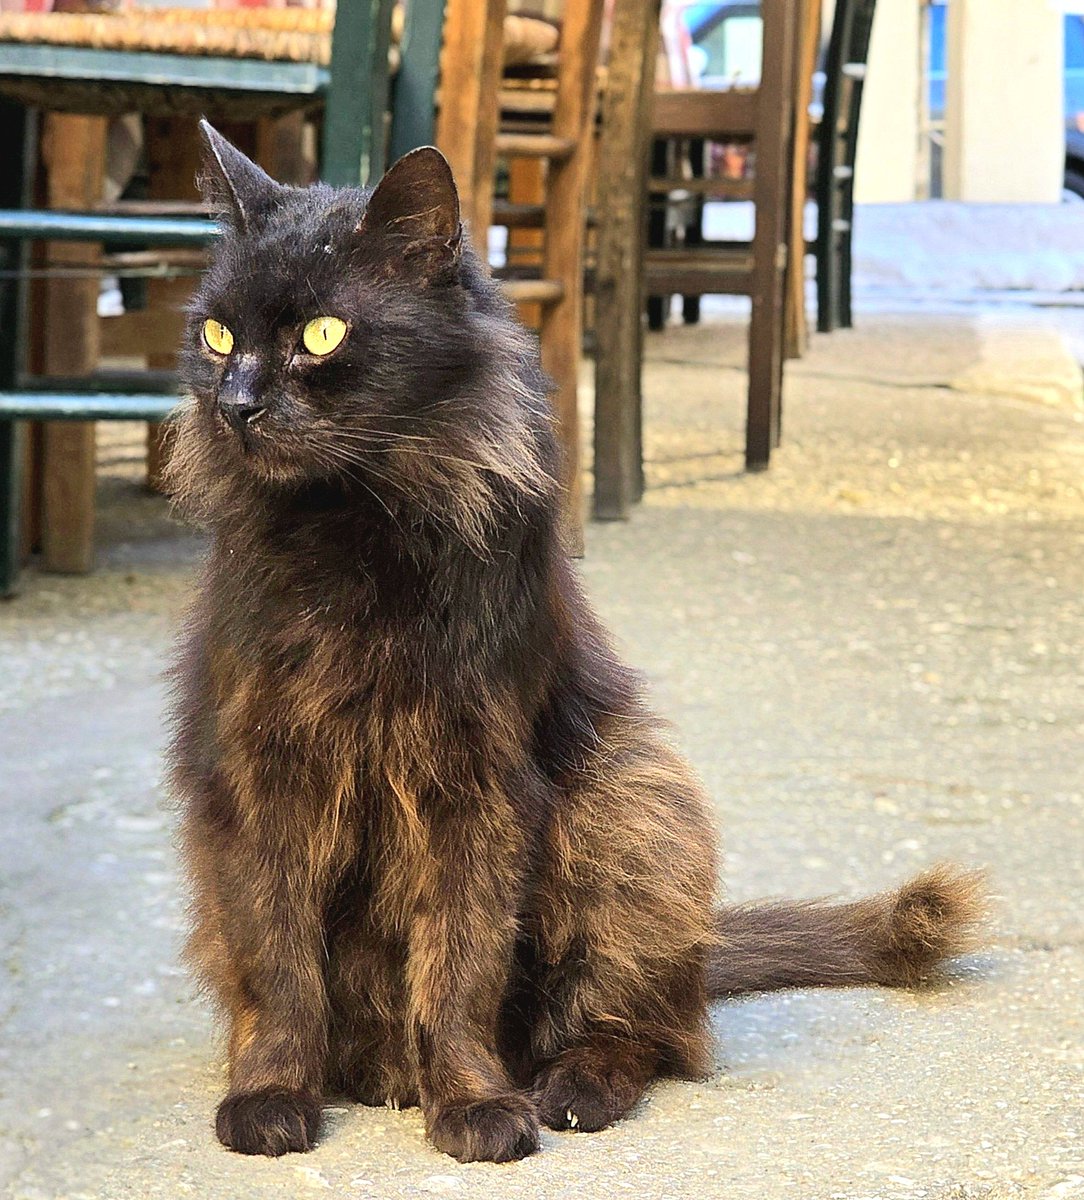 Schwarzbraun ist nicht nur die Haselnuss, sondern auch die langhaarige Katze des Tages, die in der Altstadt von Kerkyra (Korfu Stadt) Wache vor einem Restaurant hält. 😸